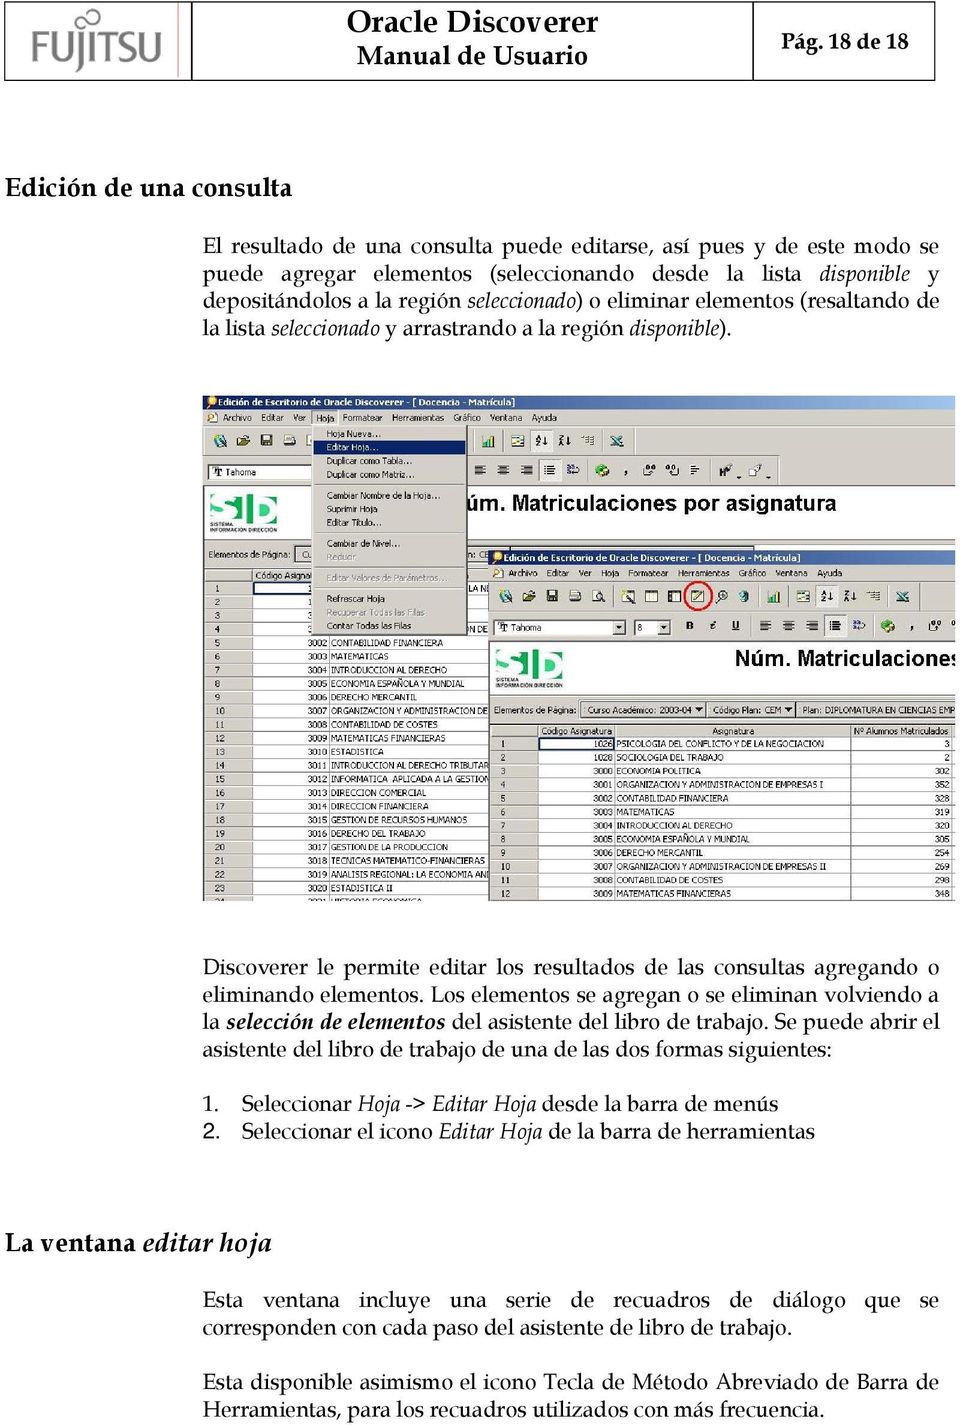 Discoverer le permite editar los resultados de las consultas agregando o eliminando elementos.